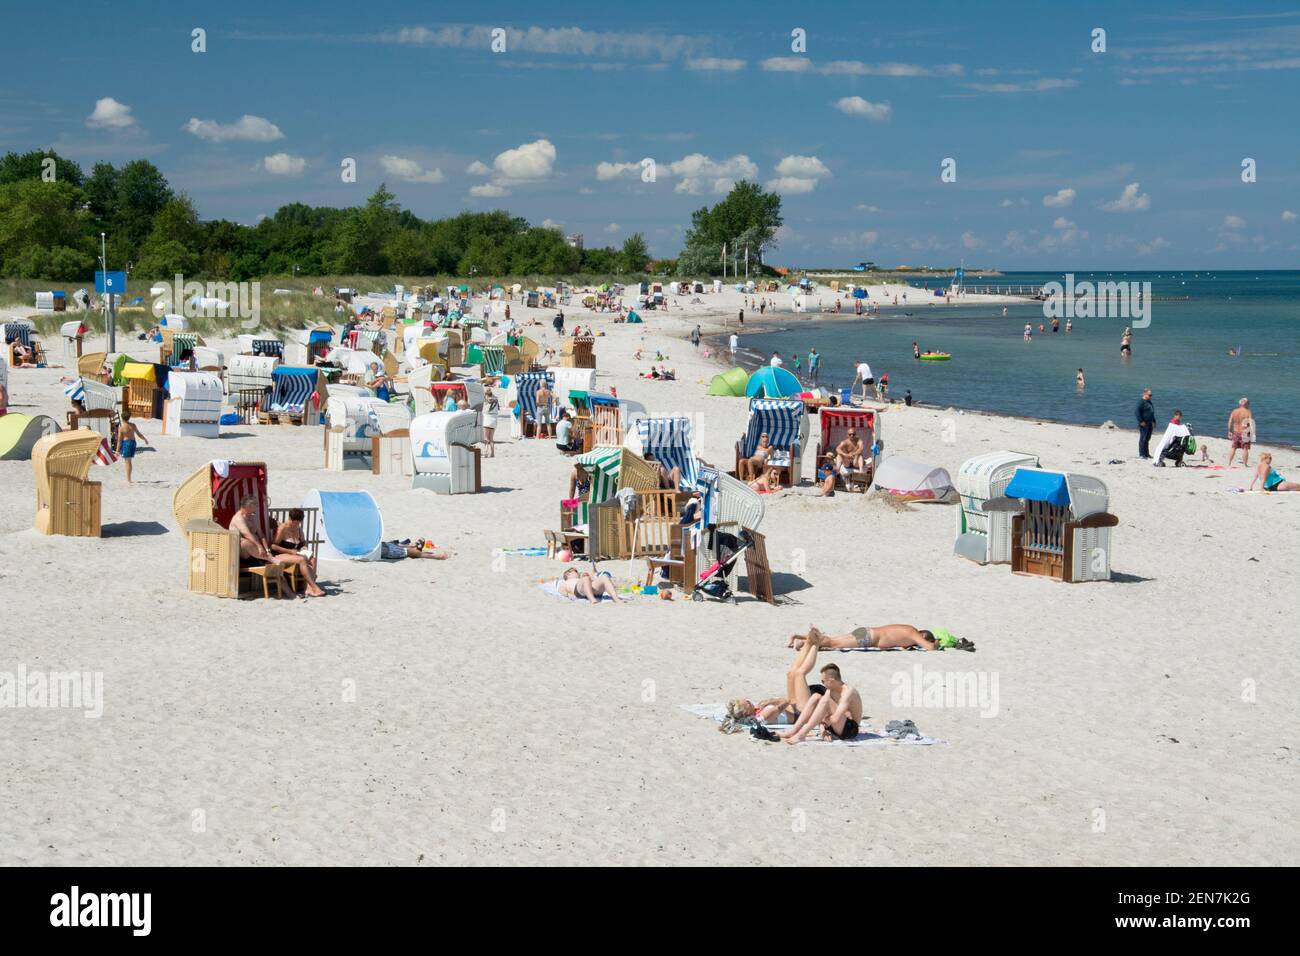 Steinwarder Beach at Heiligenhafen, Holstein, north Germany Stock Photo